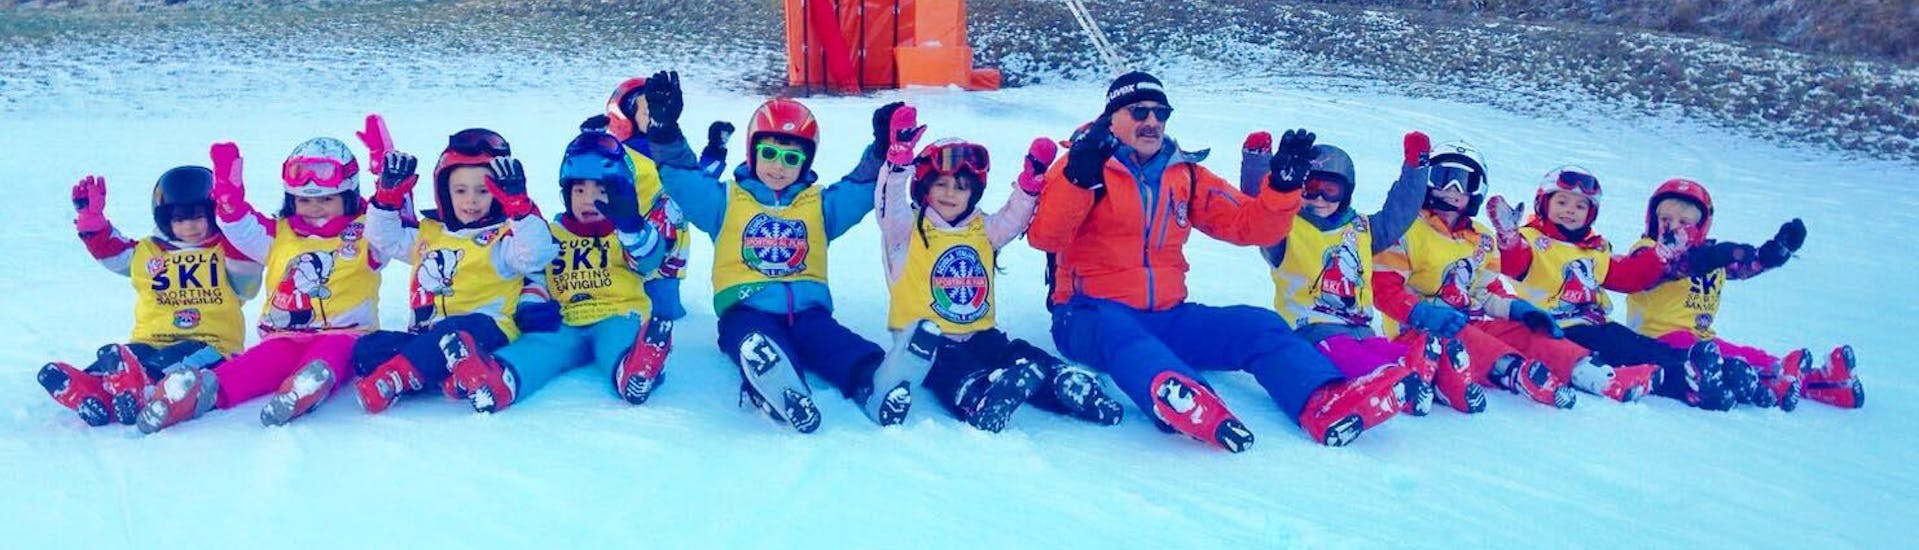 Clases de esquí para niños a partir de 3 años para todos los niveles.